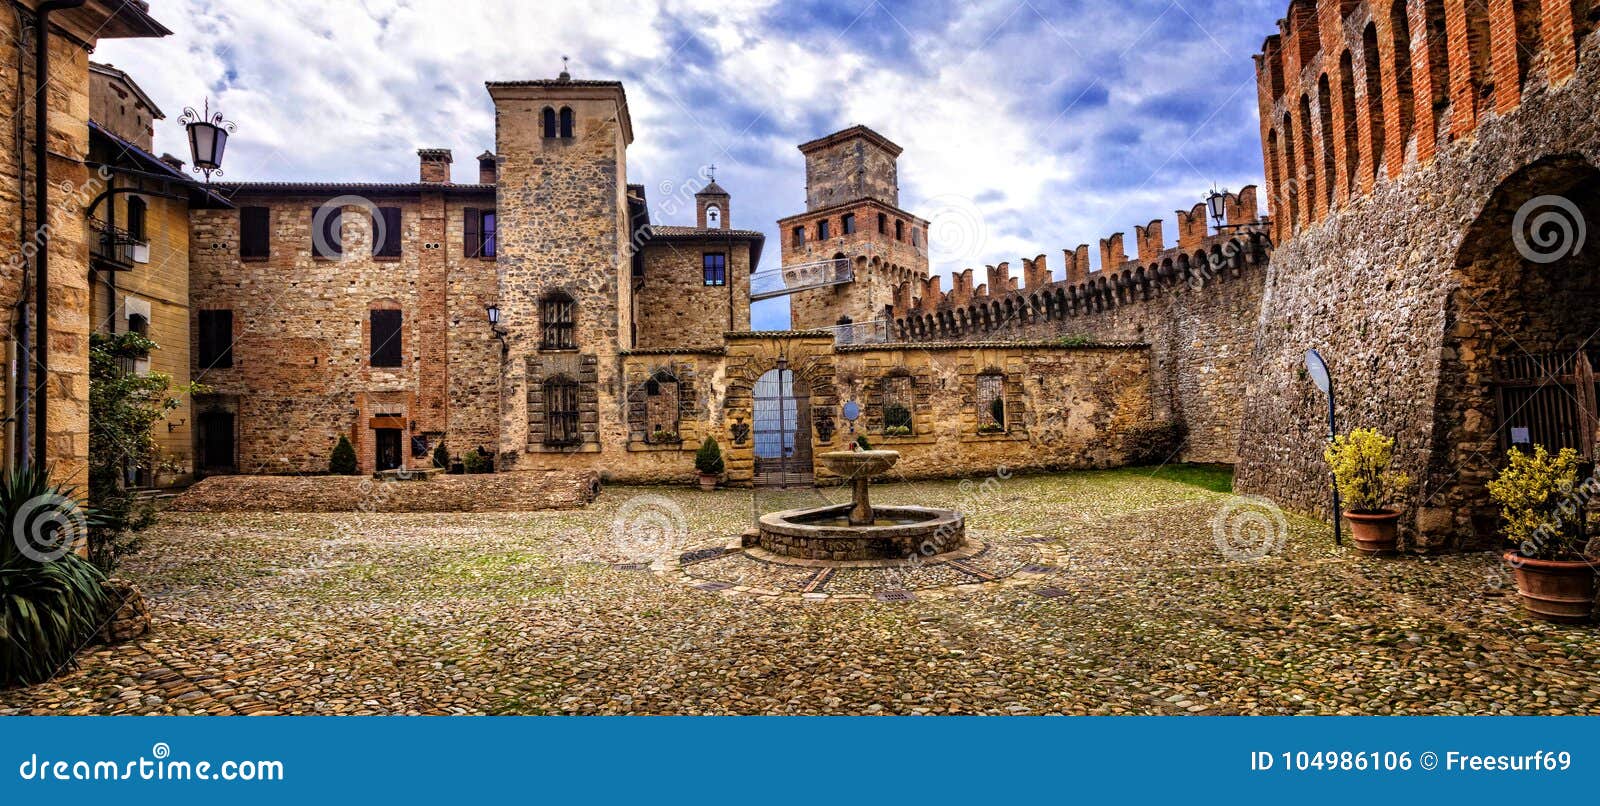 medieval castles of italy - castello di vigoleno, piacenza provi